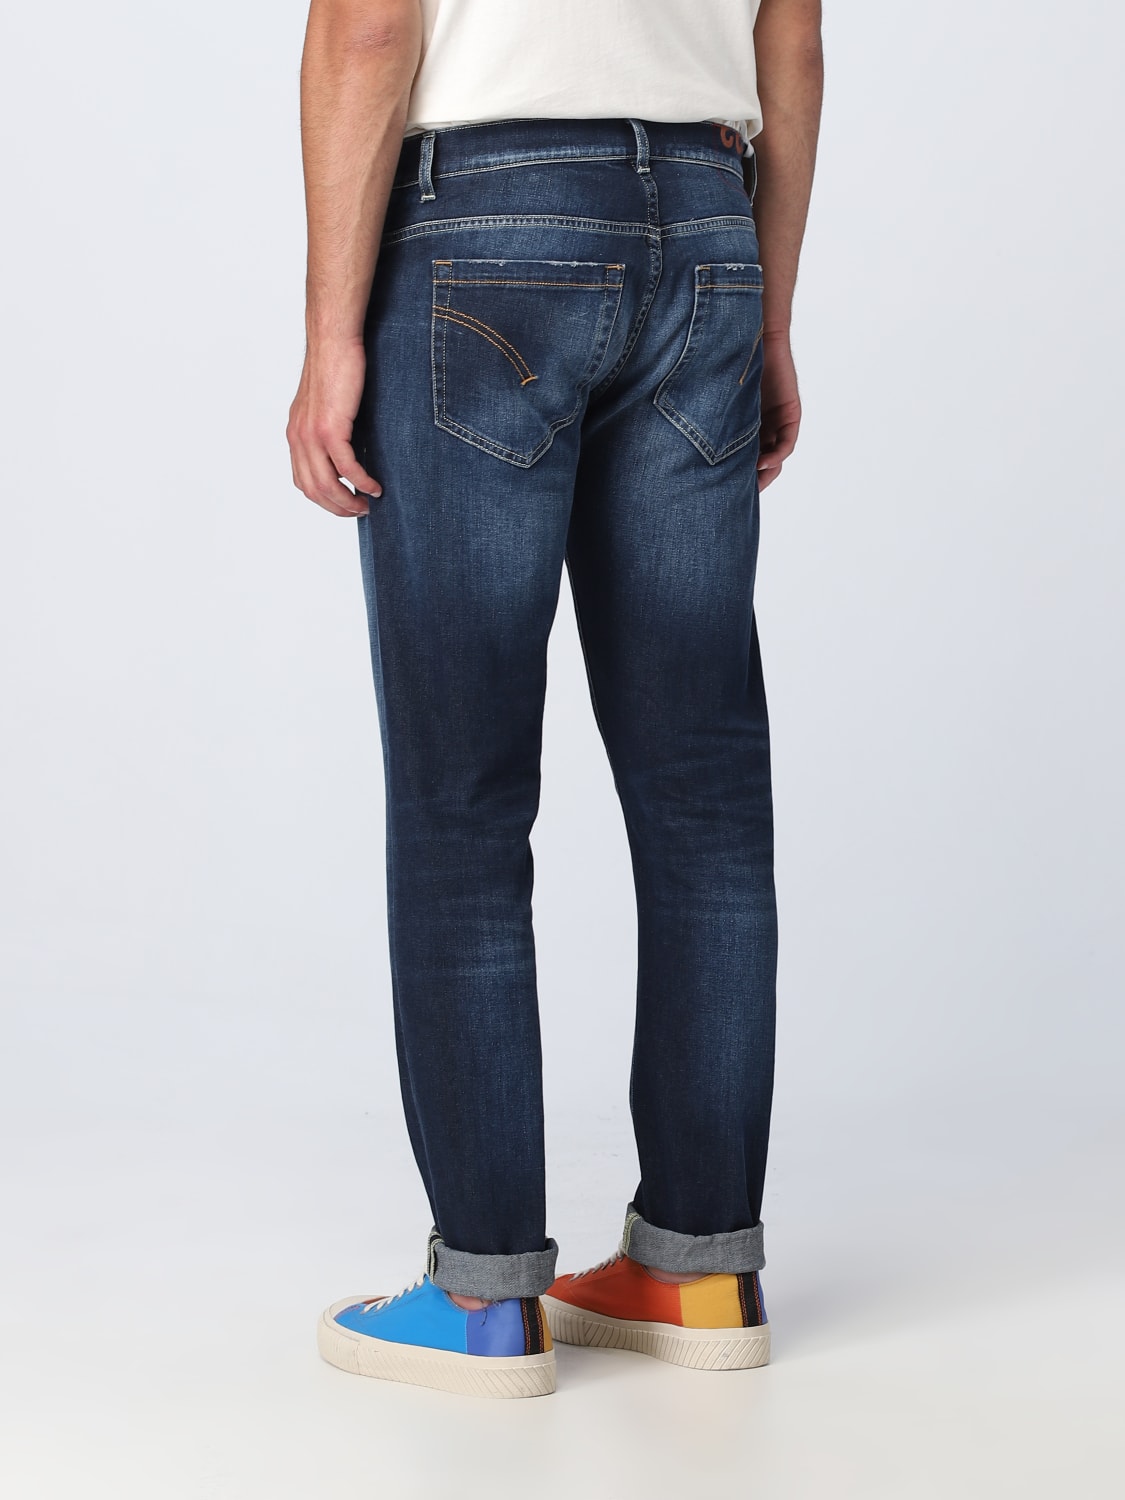 送料無料/新品 ドンダップ メンズ デニムパンツ ボトムス george Jeans